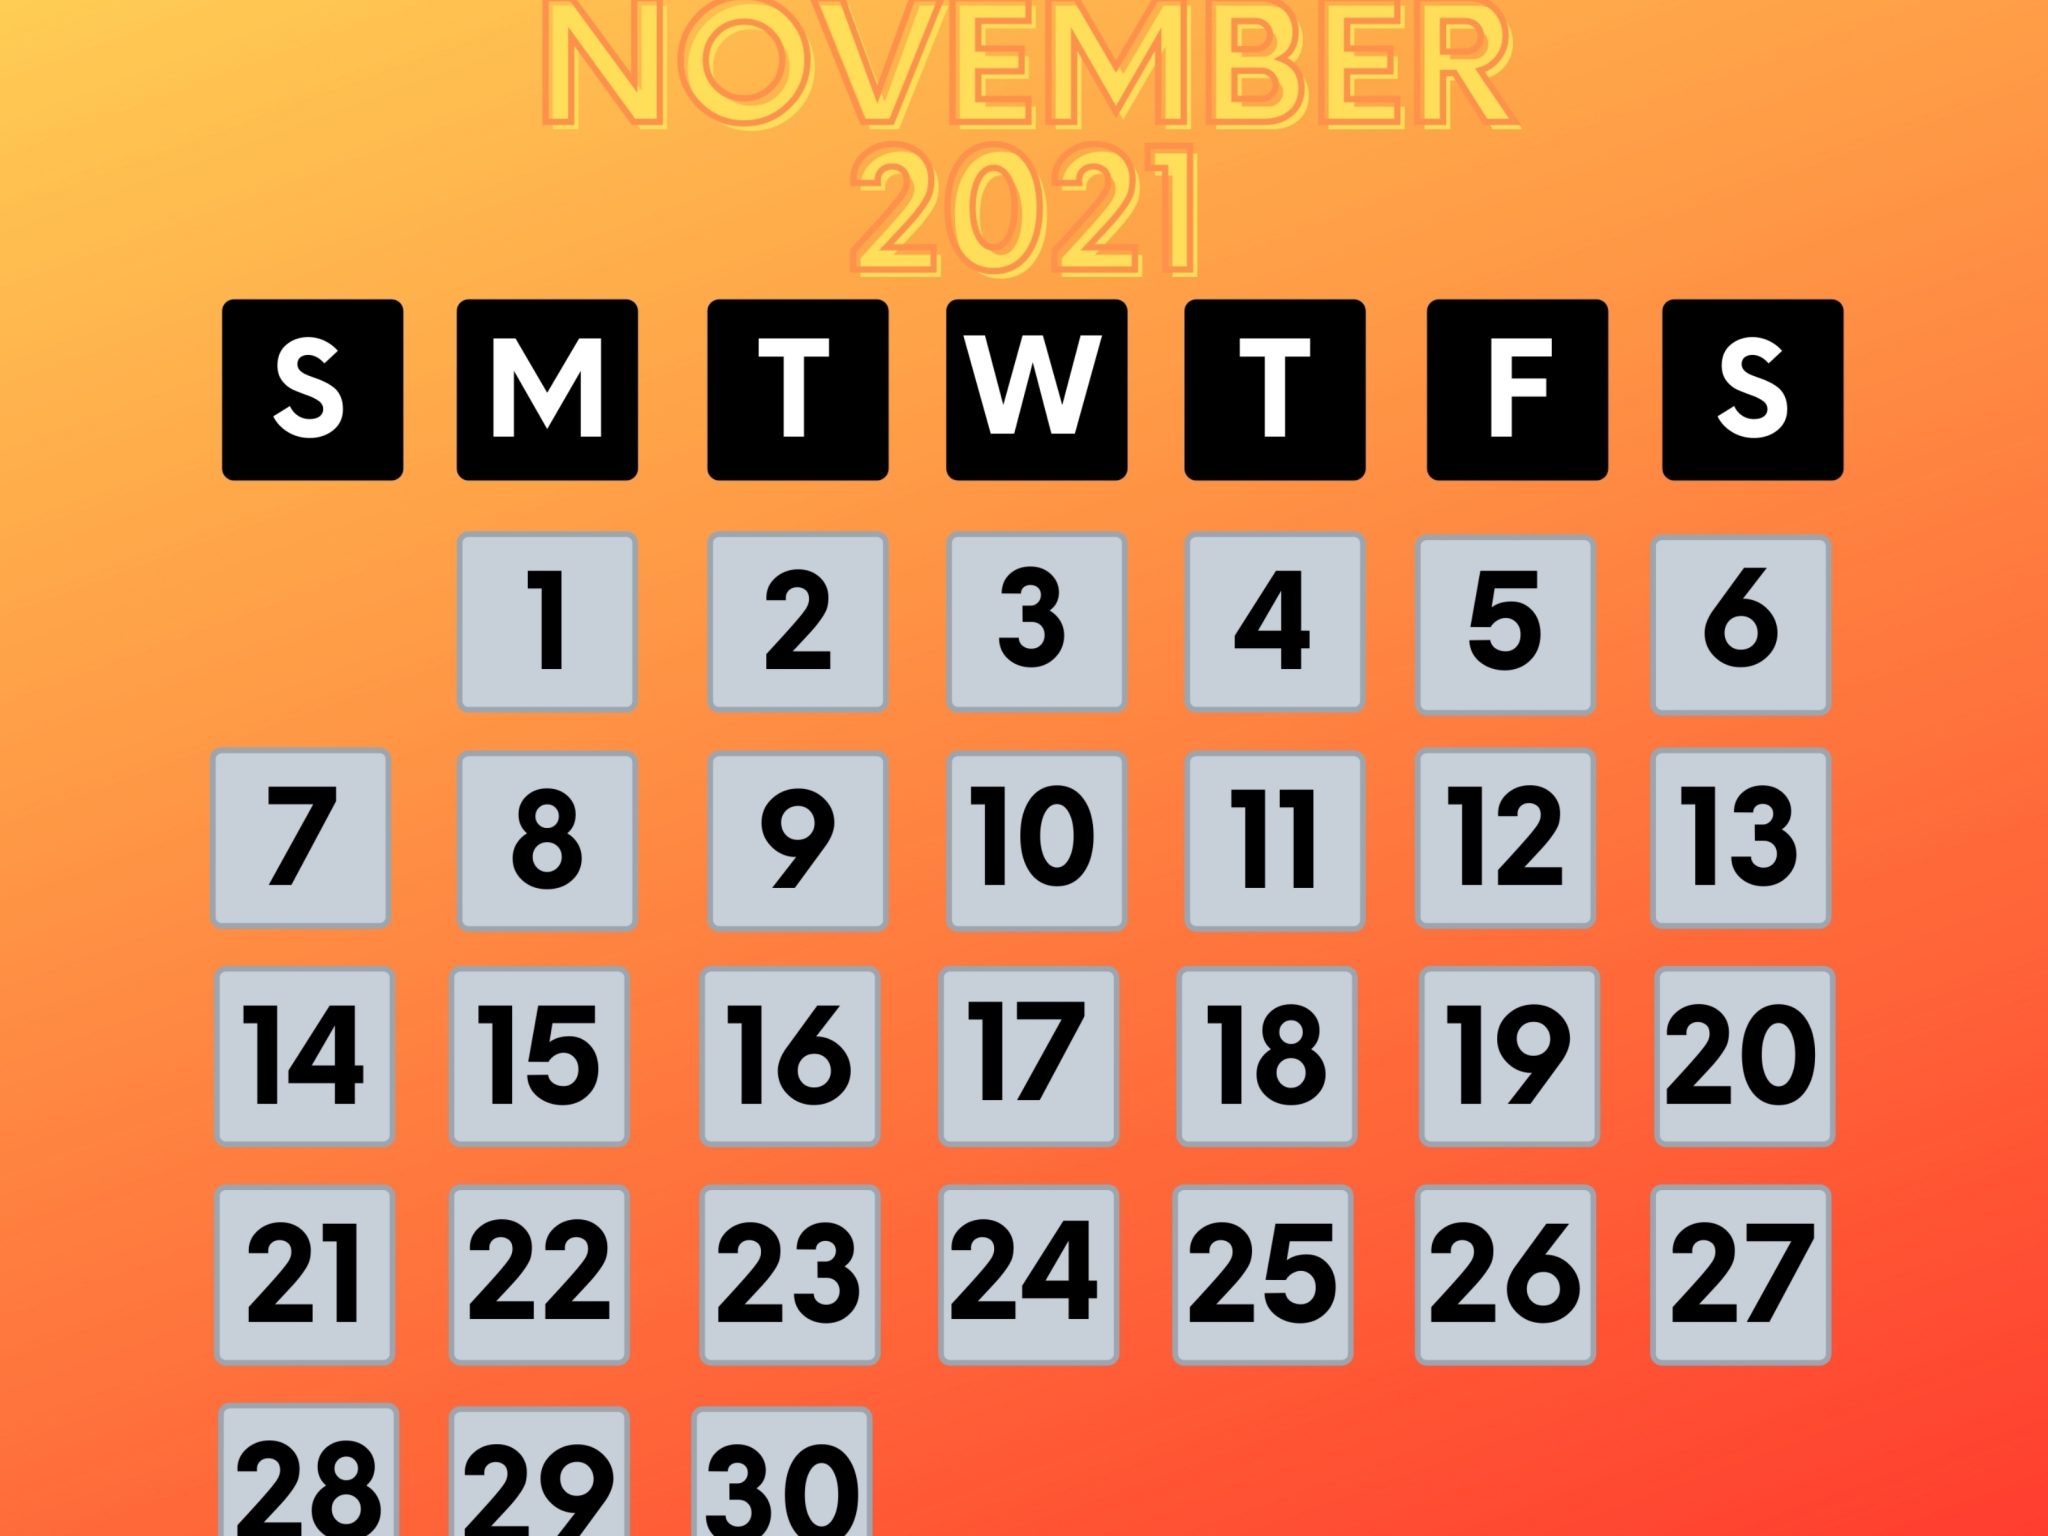 2048x1536 wallpaper November 2021 Calendar iPad Wallpaper 2048x1536 pixels resolution